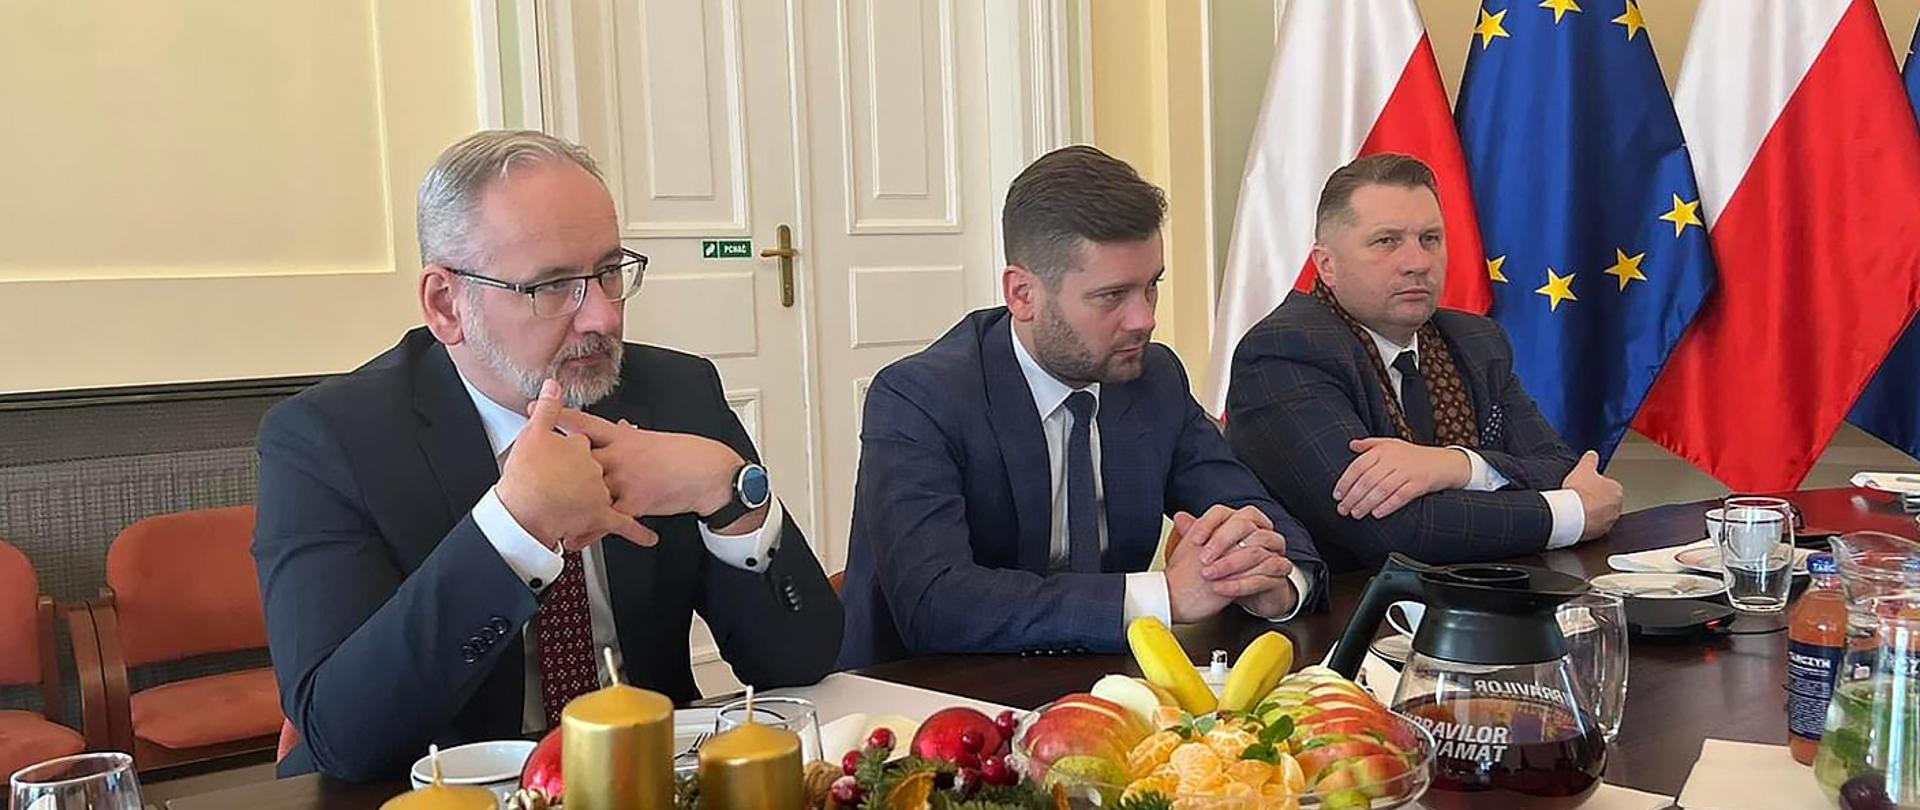 Ministrowie Bortniczuk, Czarnek i Niedzielski rozmawiali o rozwoju Programu Sportowe Talenty - przy stole siedzą ministrowie